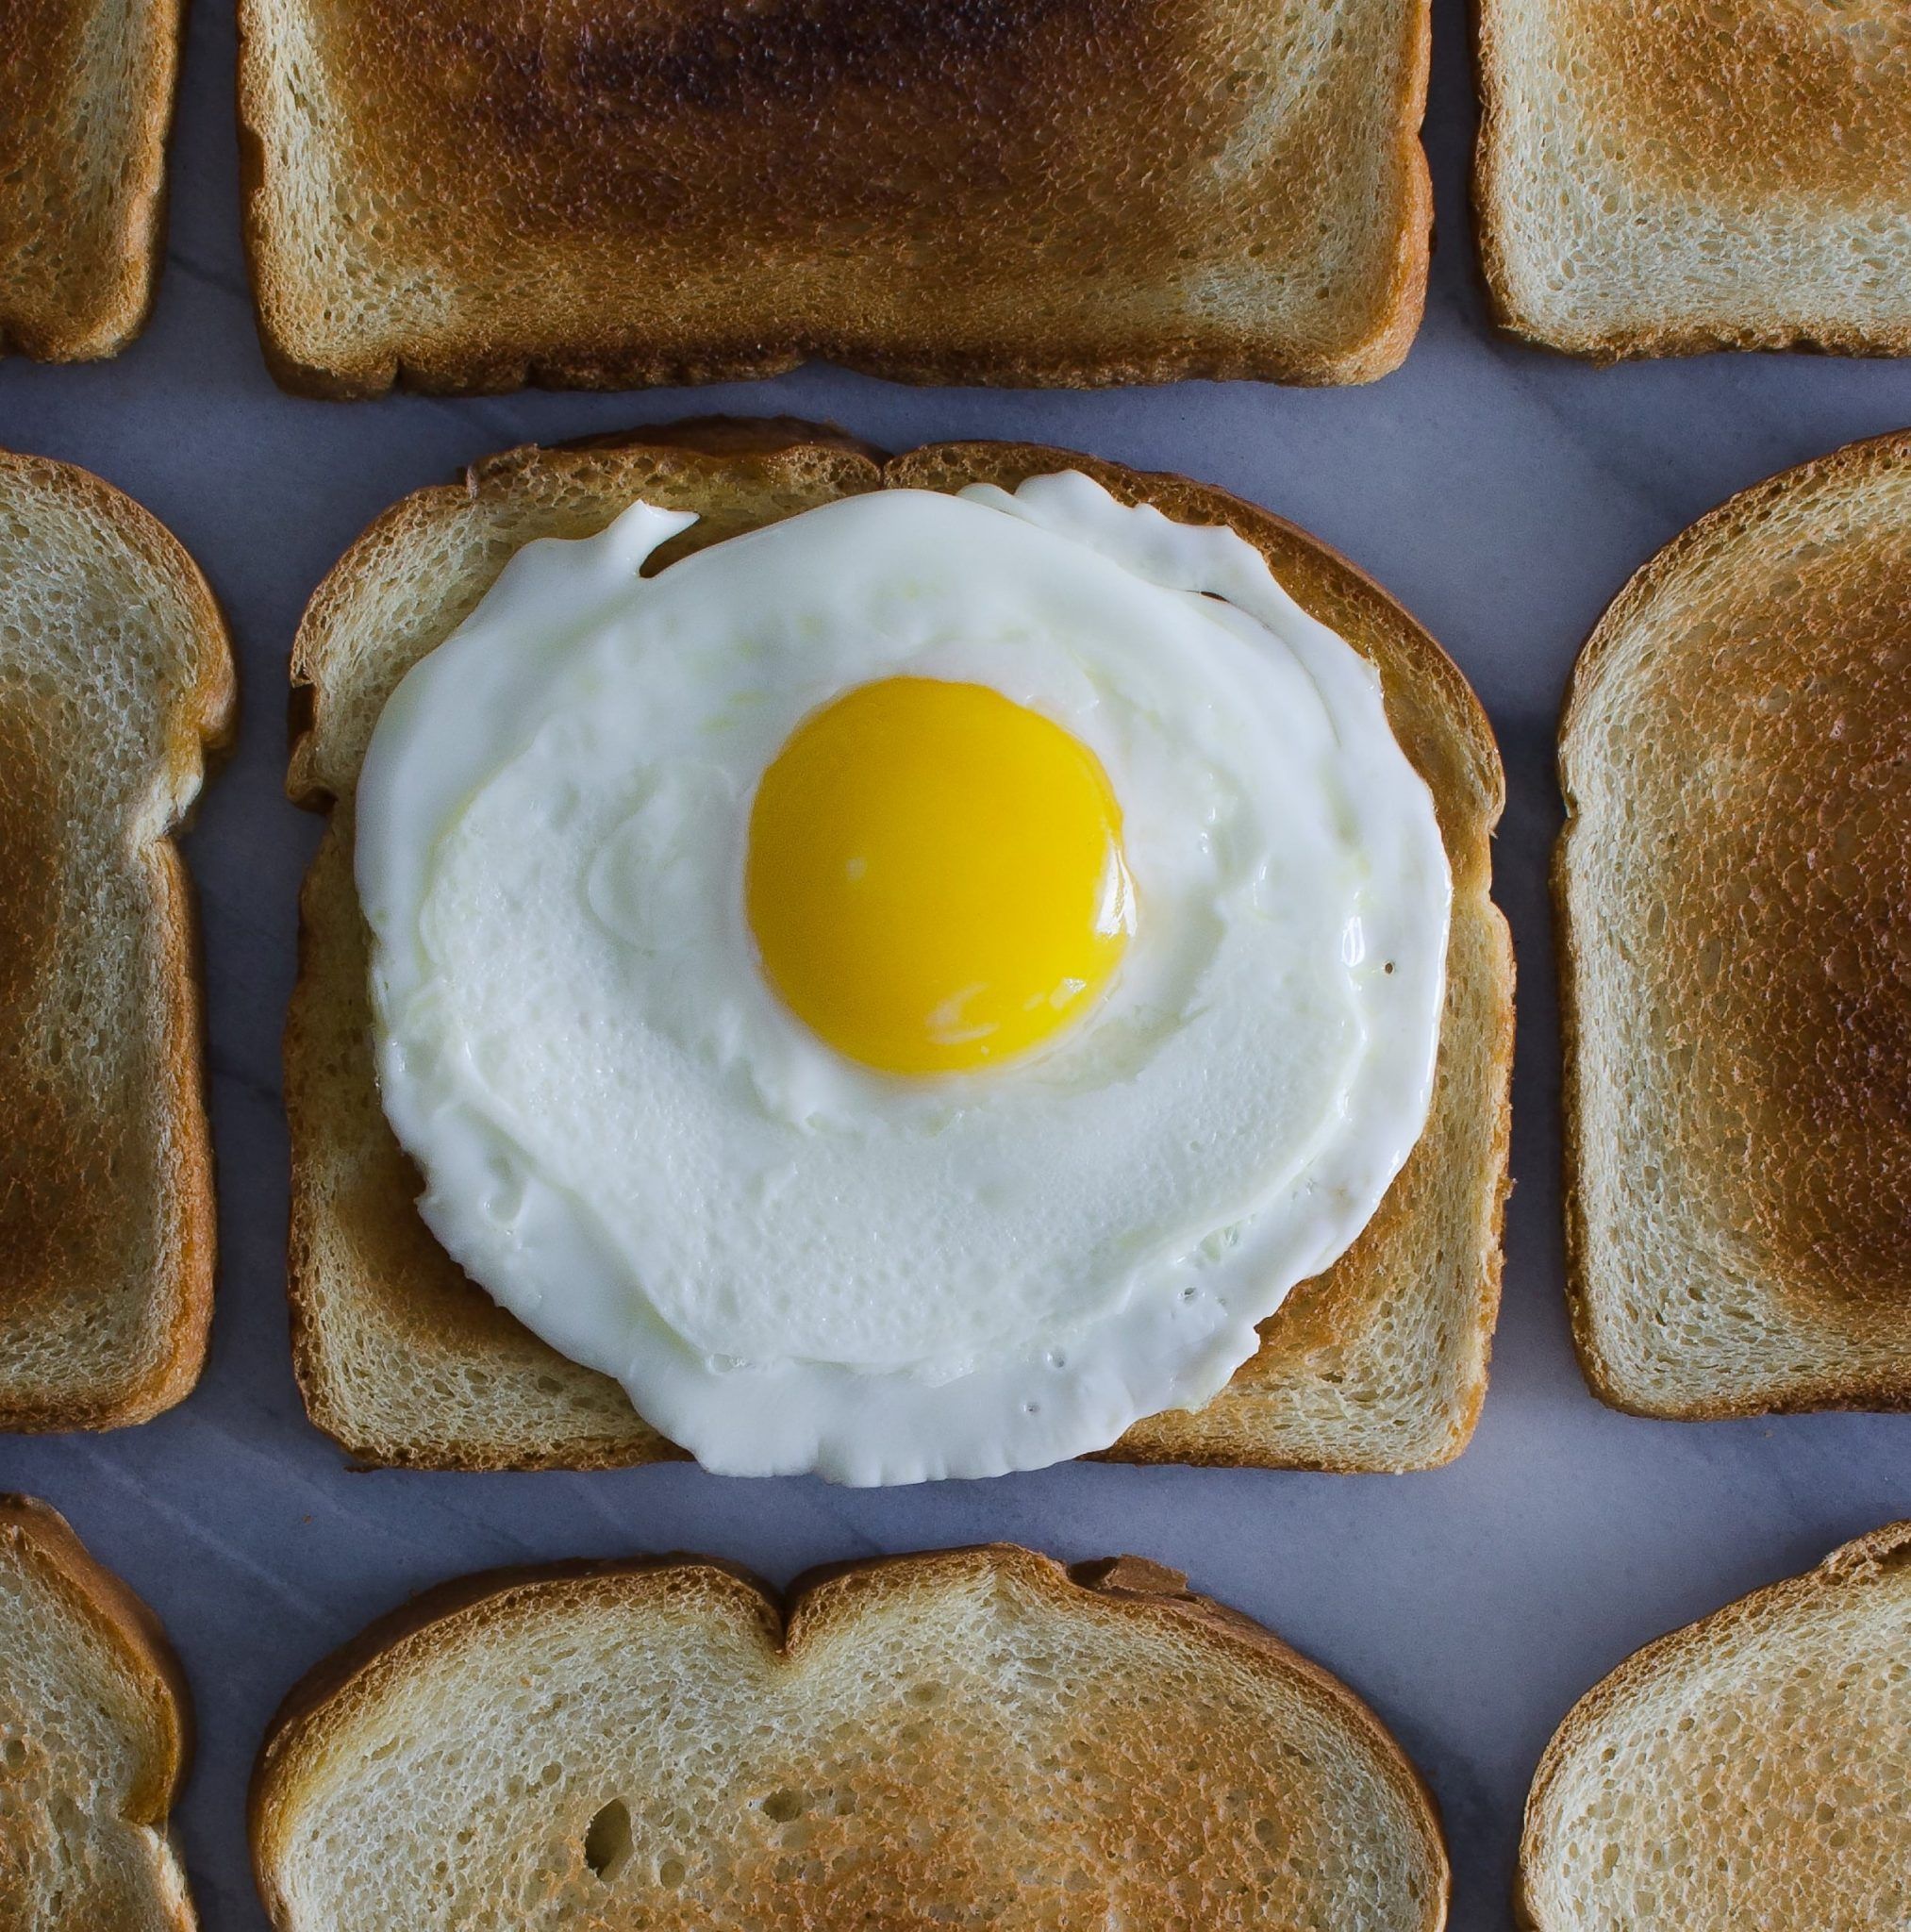 son los huevos veganos una opcion saludable para la alimentacion